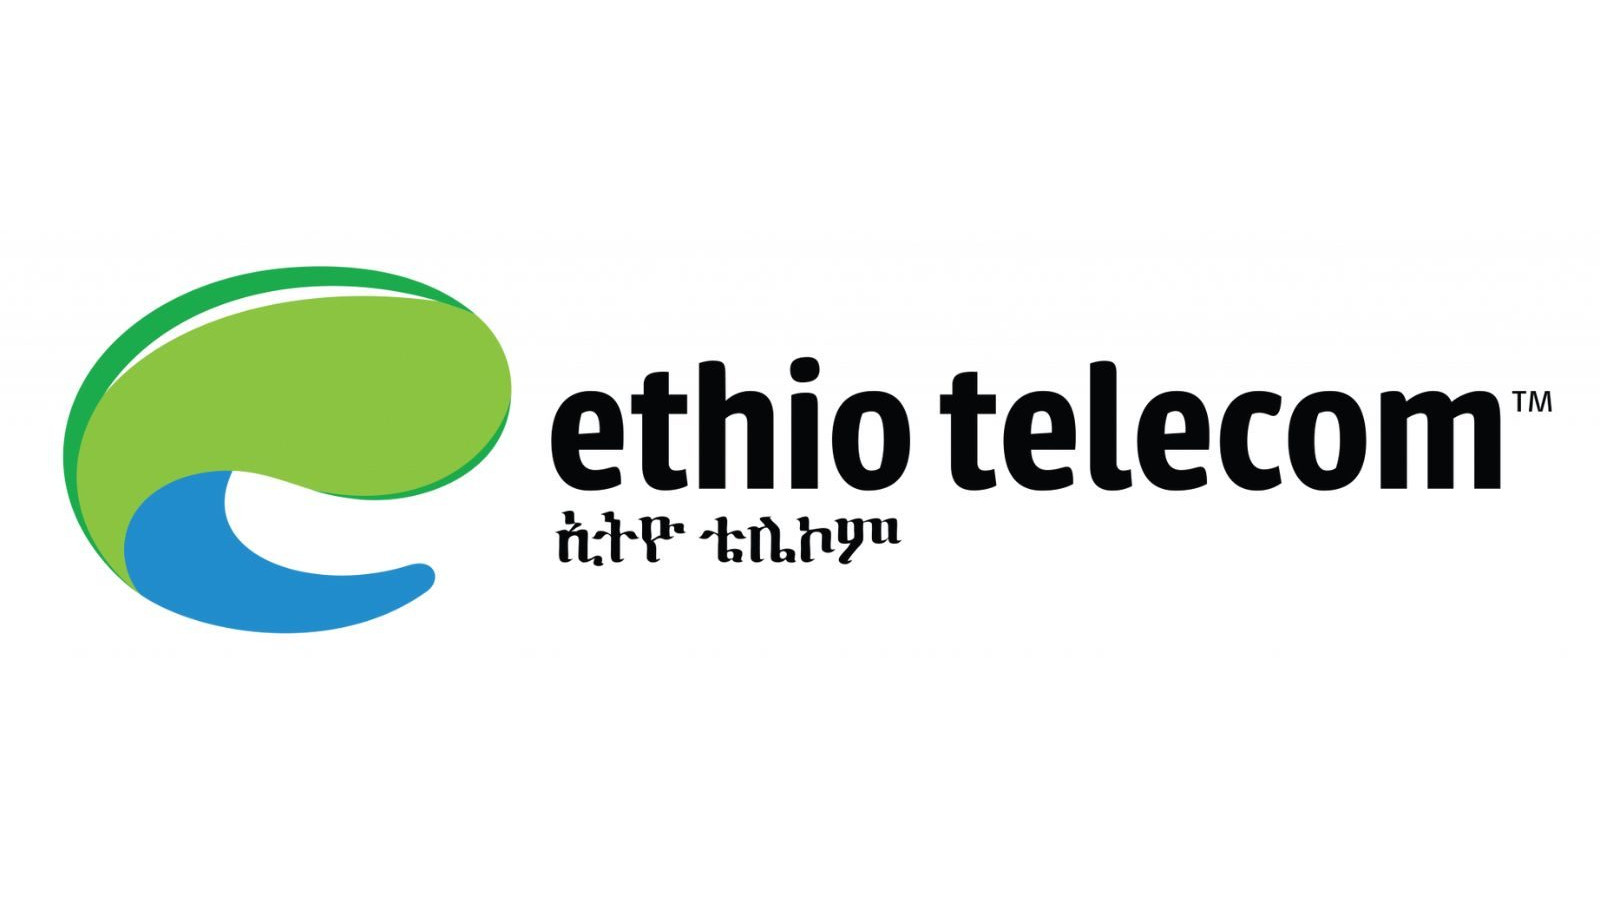 Ethiotelecom 5 ETB Mobile Top-up ET [USD 0.68]